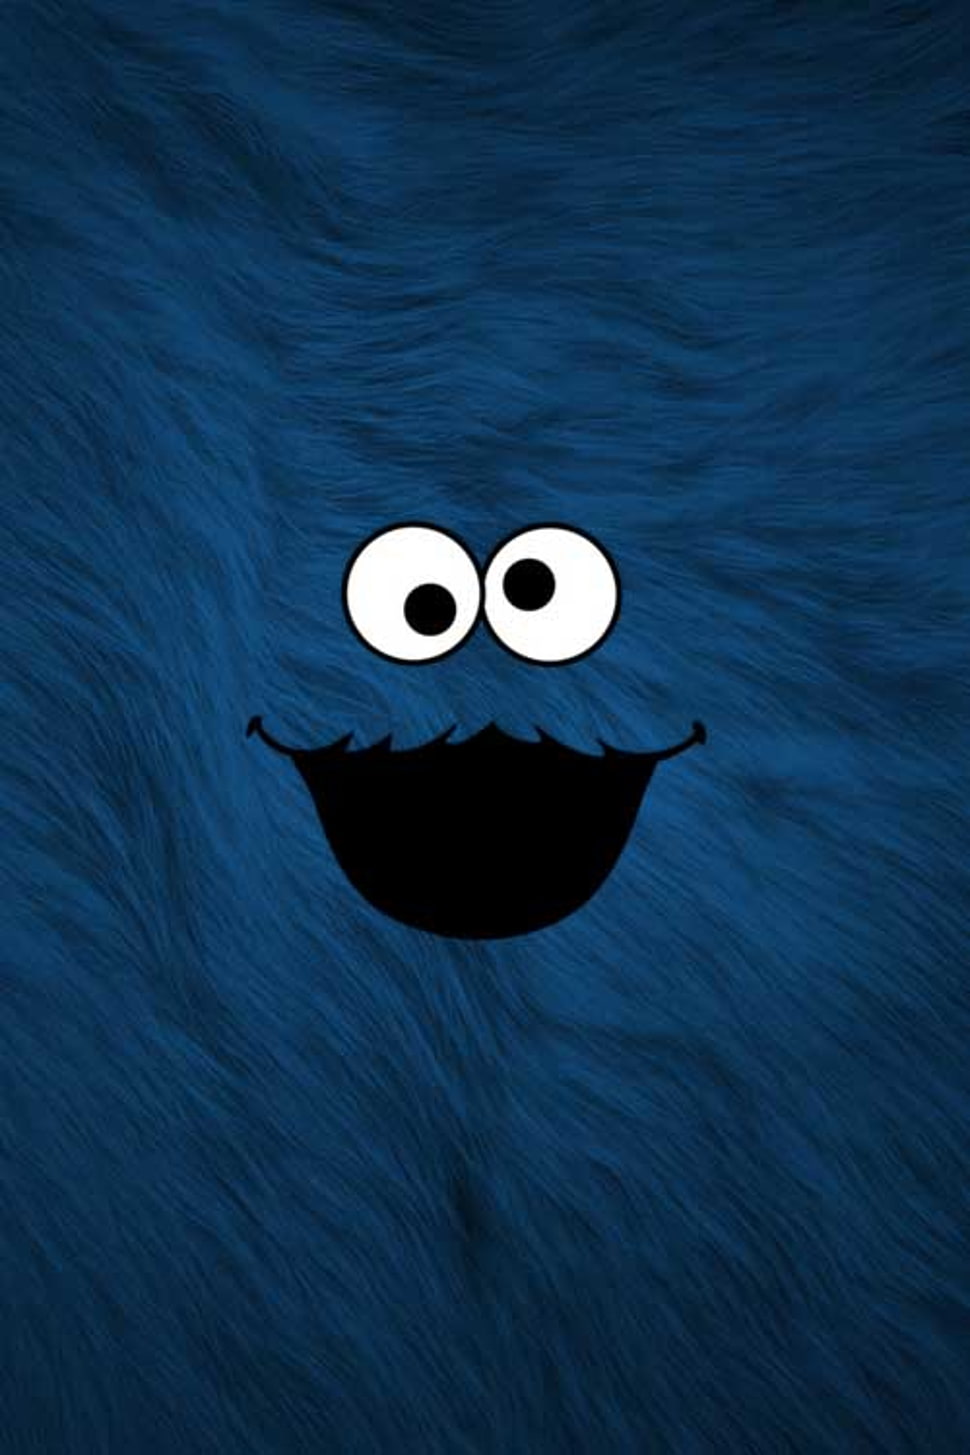 Yêu thích nhân vật hài hước và dễ thương của Sesame Street? Hãy xem thiết kế nền tảng với hình ảnh Cookie Monster của chúng tôi! Chúng tôi tin rằng bạn sẽ cảm thấy vui vẻ và thư giãn với hình nền này.